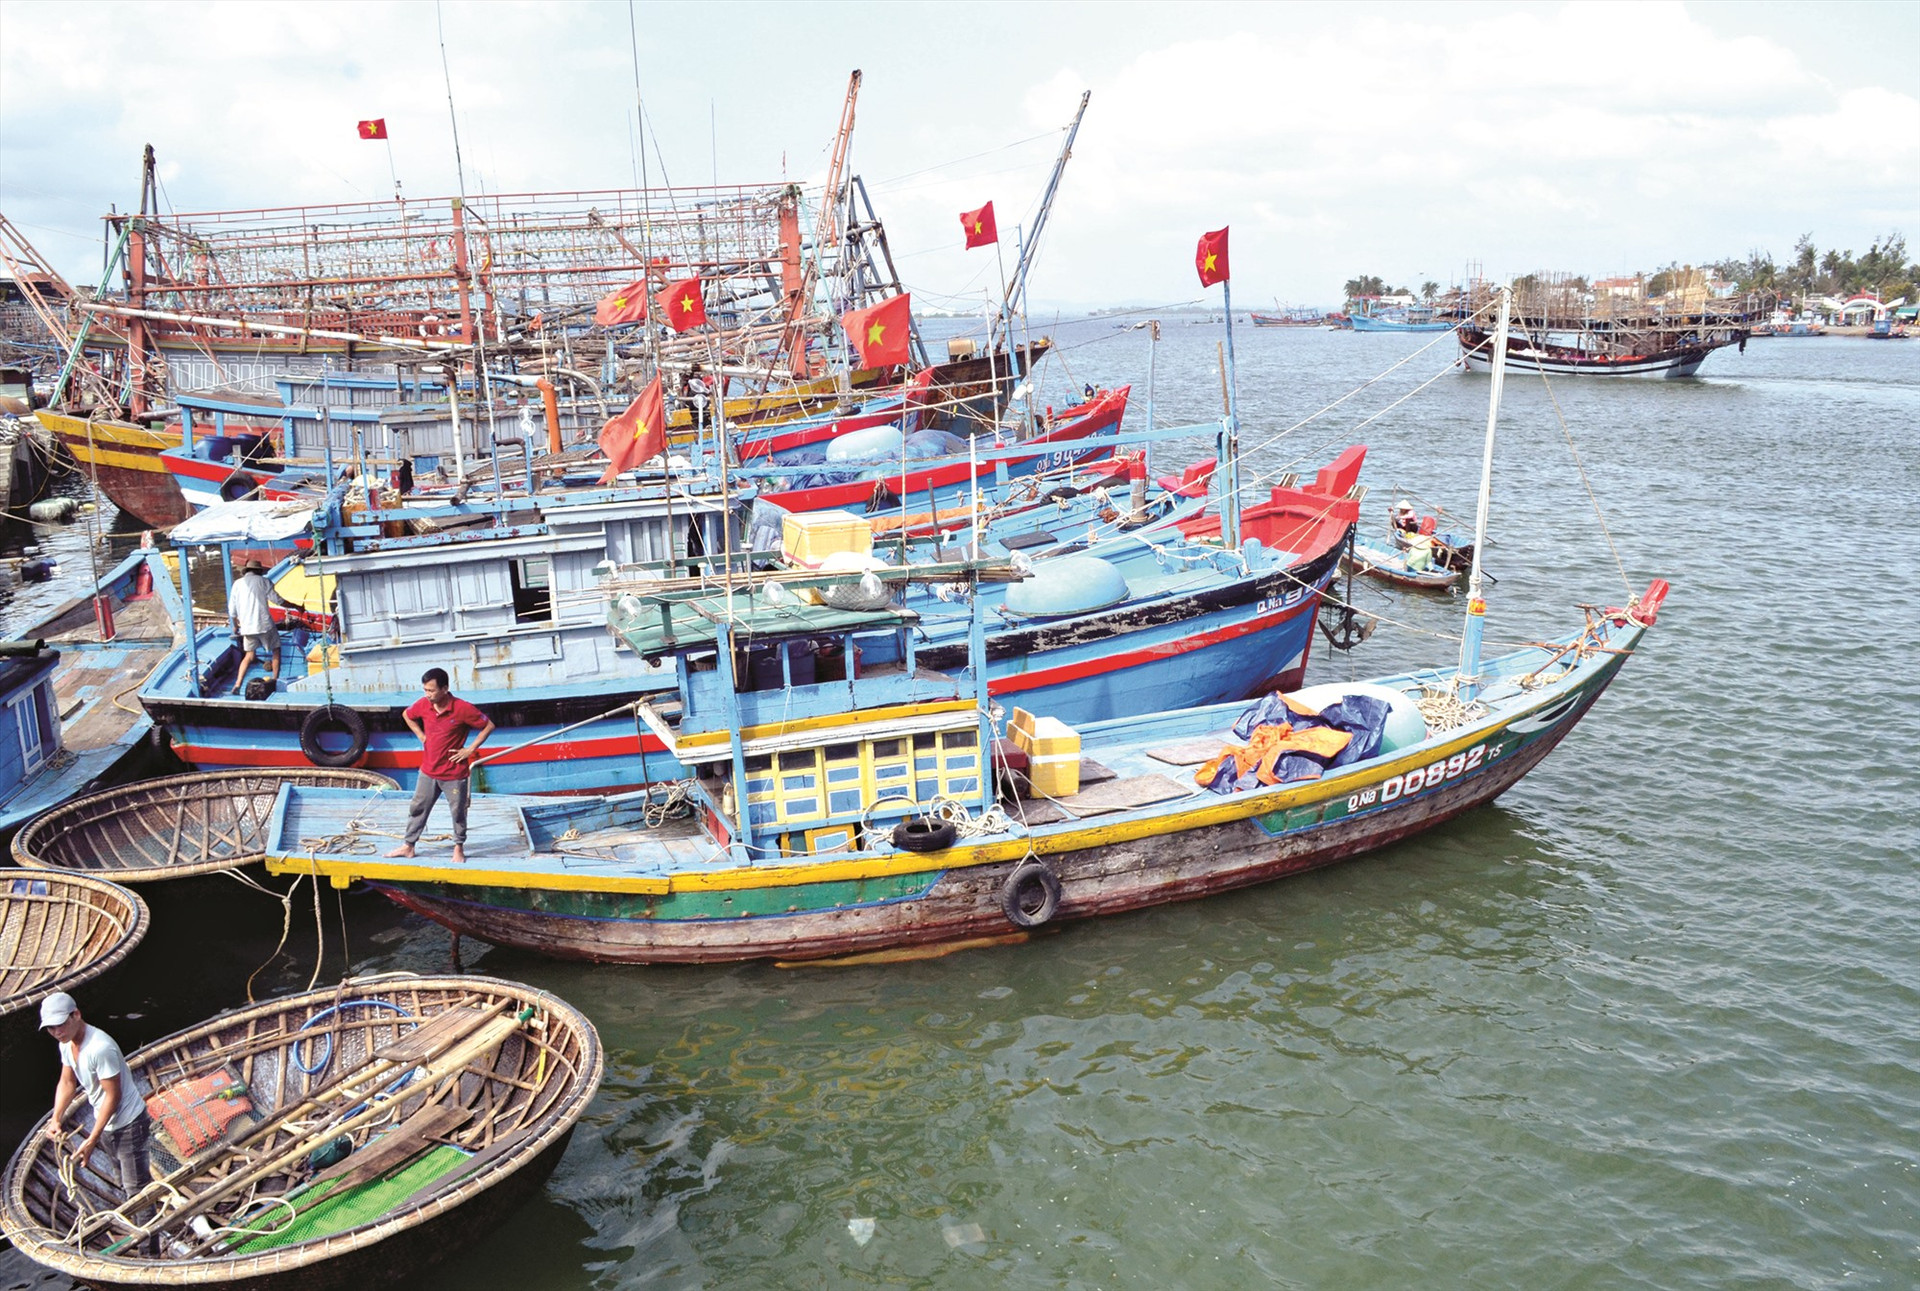 Quảng Nam cần giảm tàu thuyền nhỏ, giảm cường lực khai thác hải sản ven bờ để bảo vệ nguồn lợi. Ảnh: VIỆT NGUYỄN